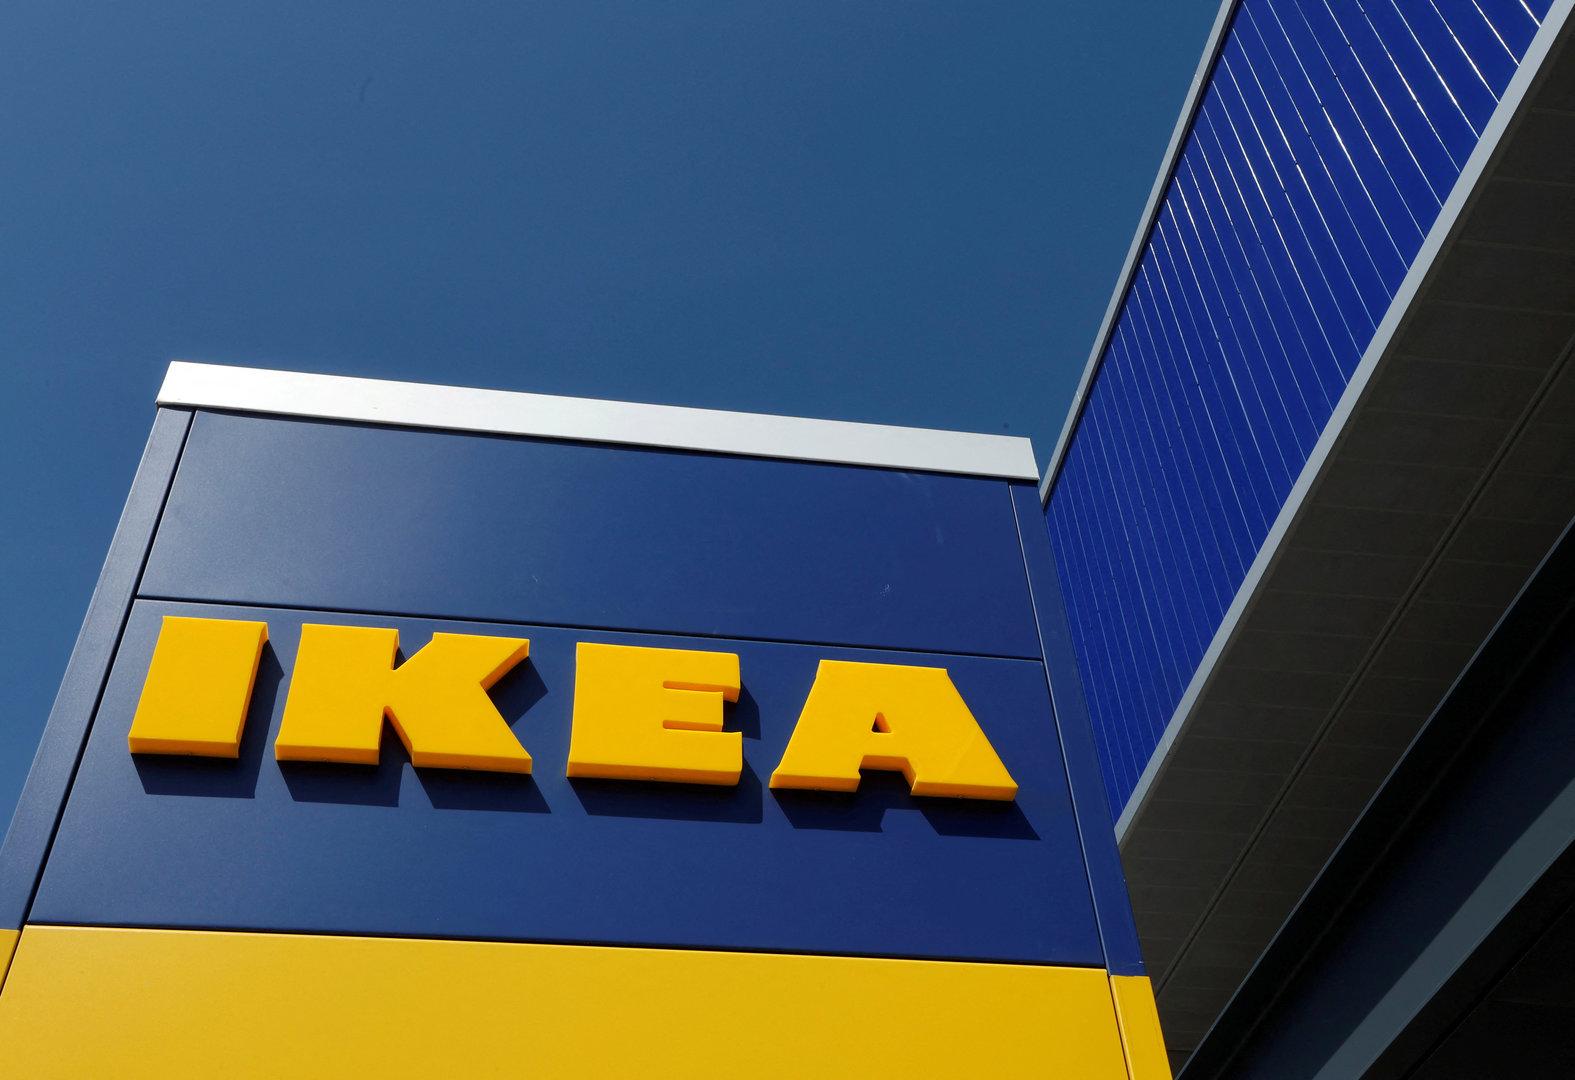 Gebrochene Beschläge: Ikea gibt Produktrückruf für Spiegel aus